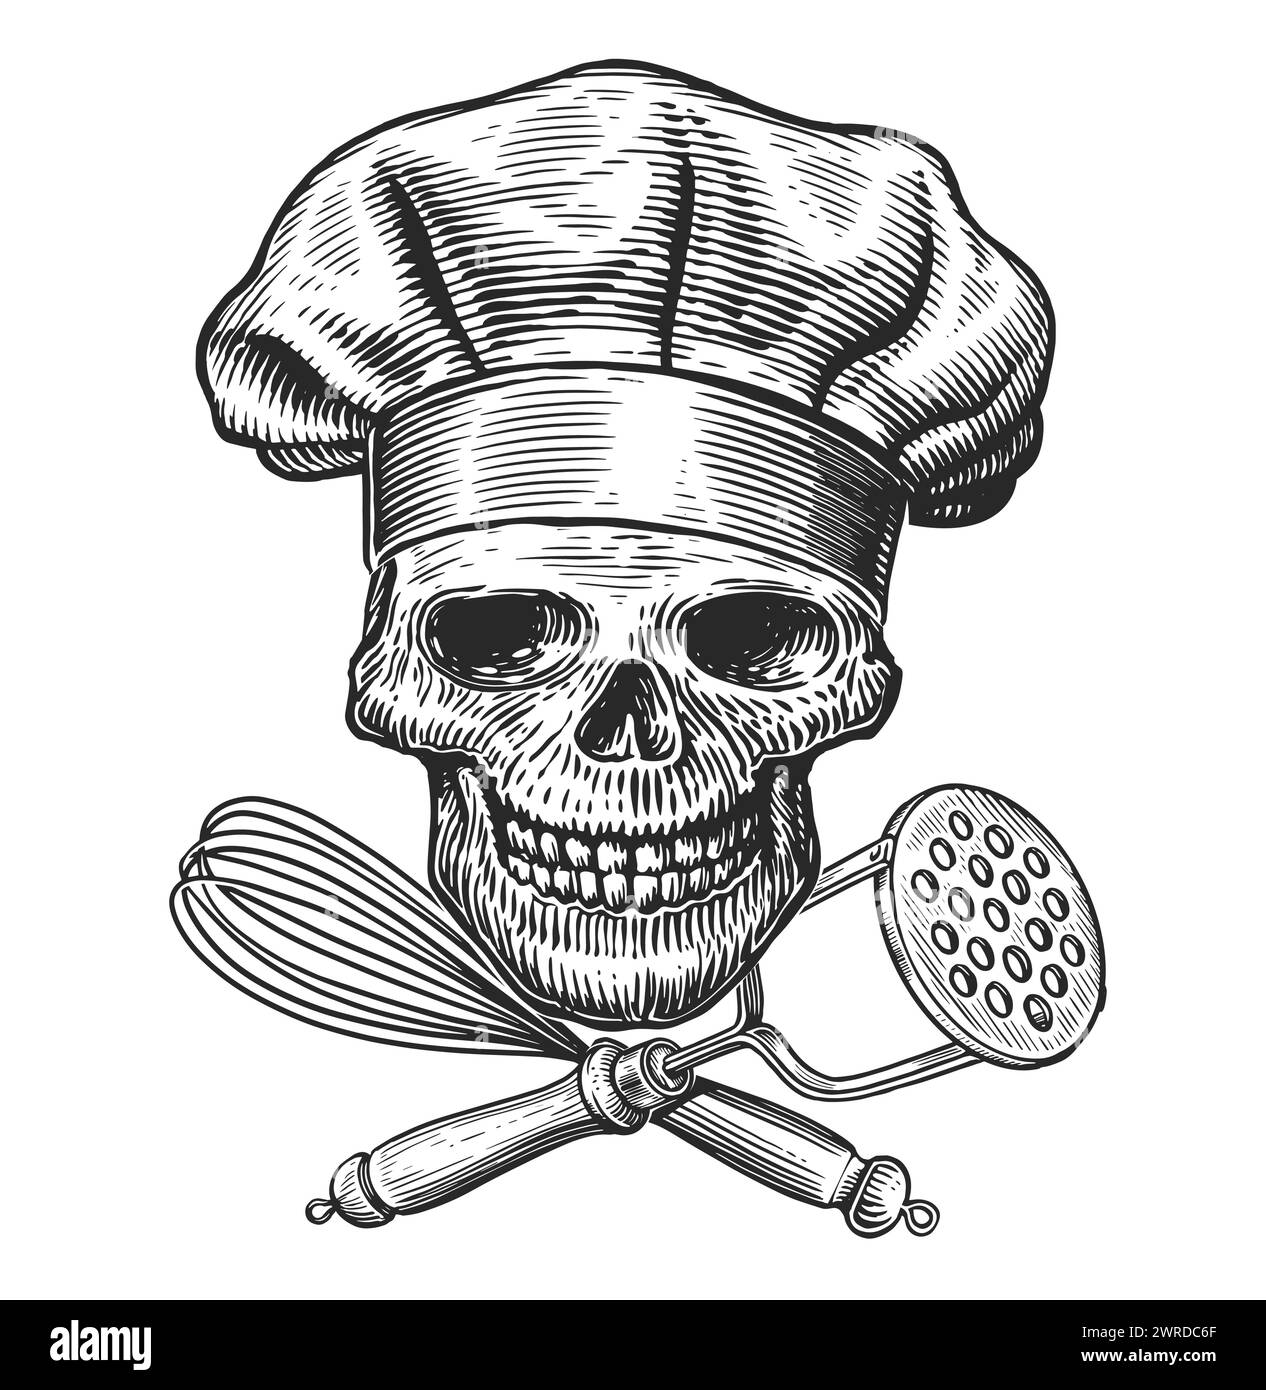 Skelett-Vektor-Illustration kochen. Grinsender Schädel in Kochmütze mit gekreuzten Küchenutensilien Stock Vektor